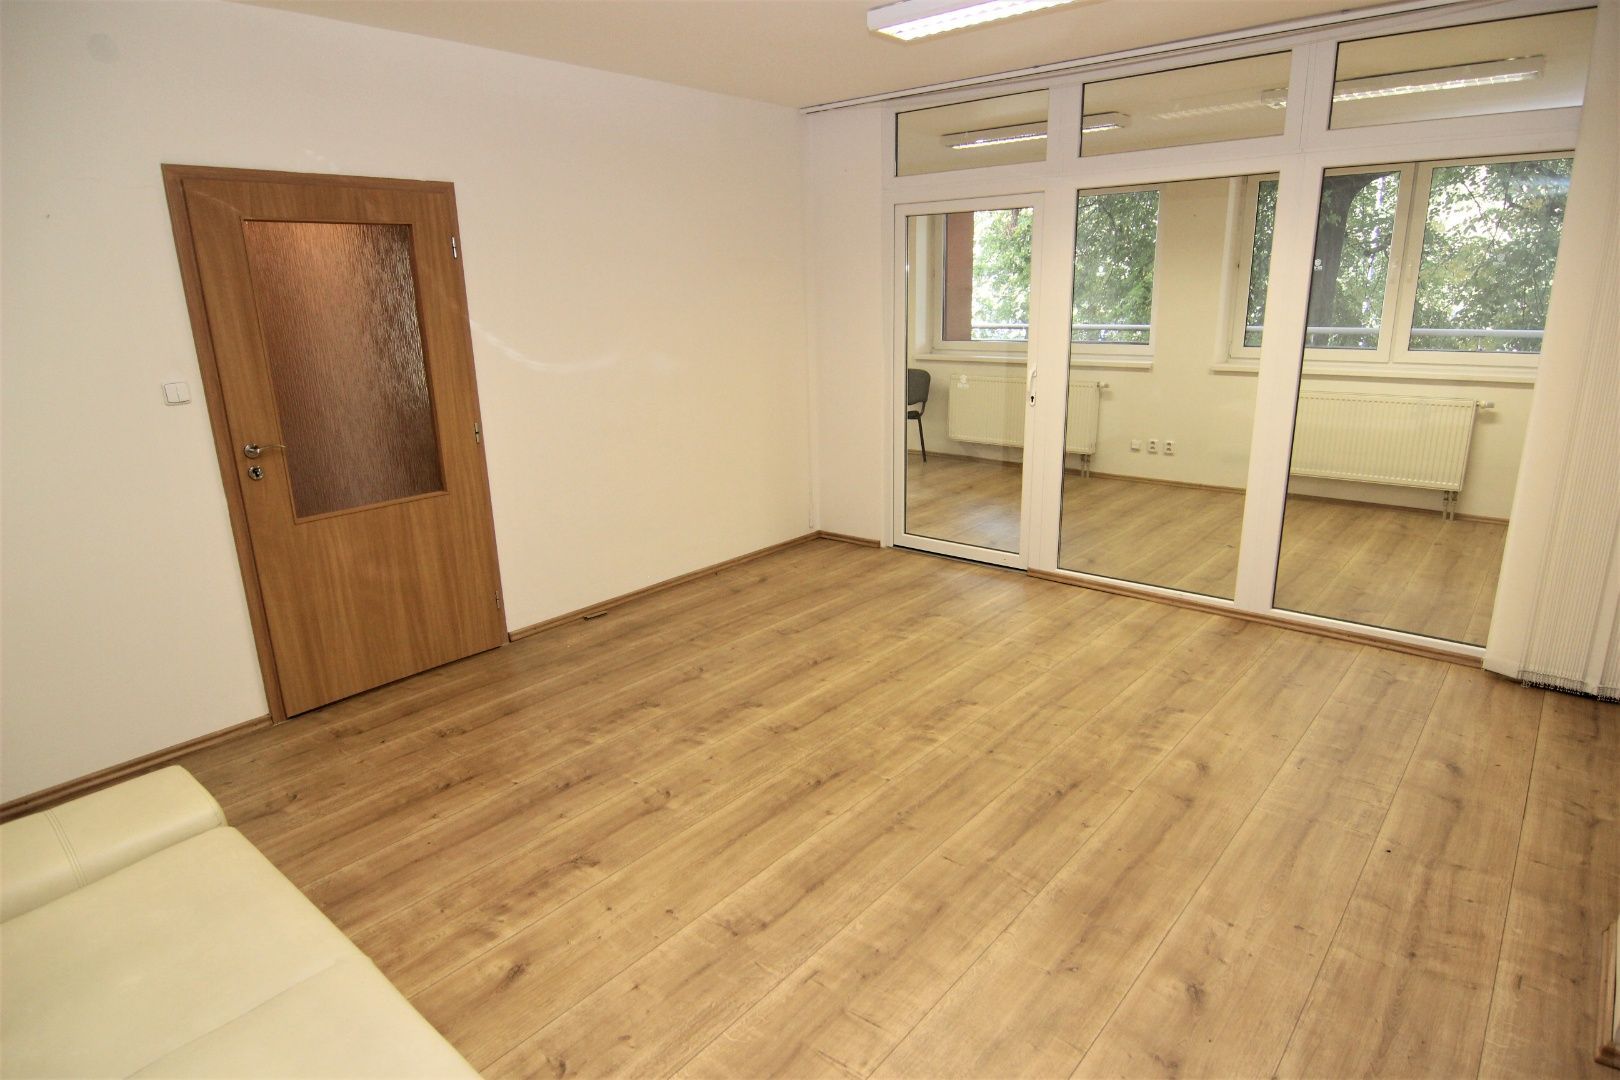 Predaj pekných kancelárskych priestorov v novostavbe s vlastnou terasou vo výbornej lokalite, Komárnická ul.